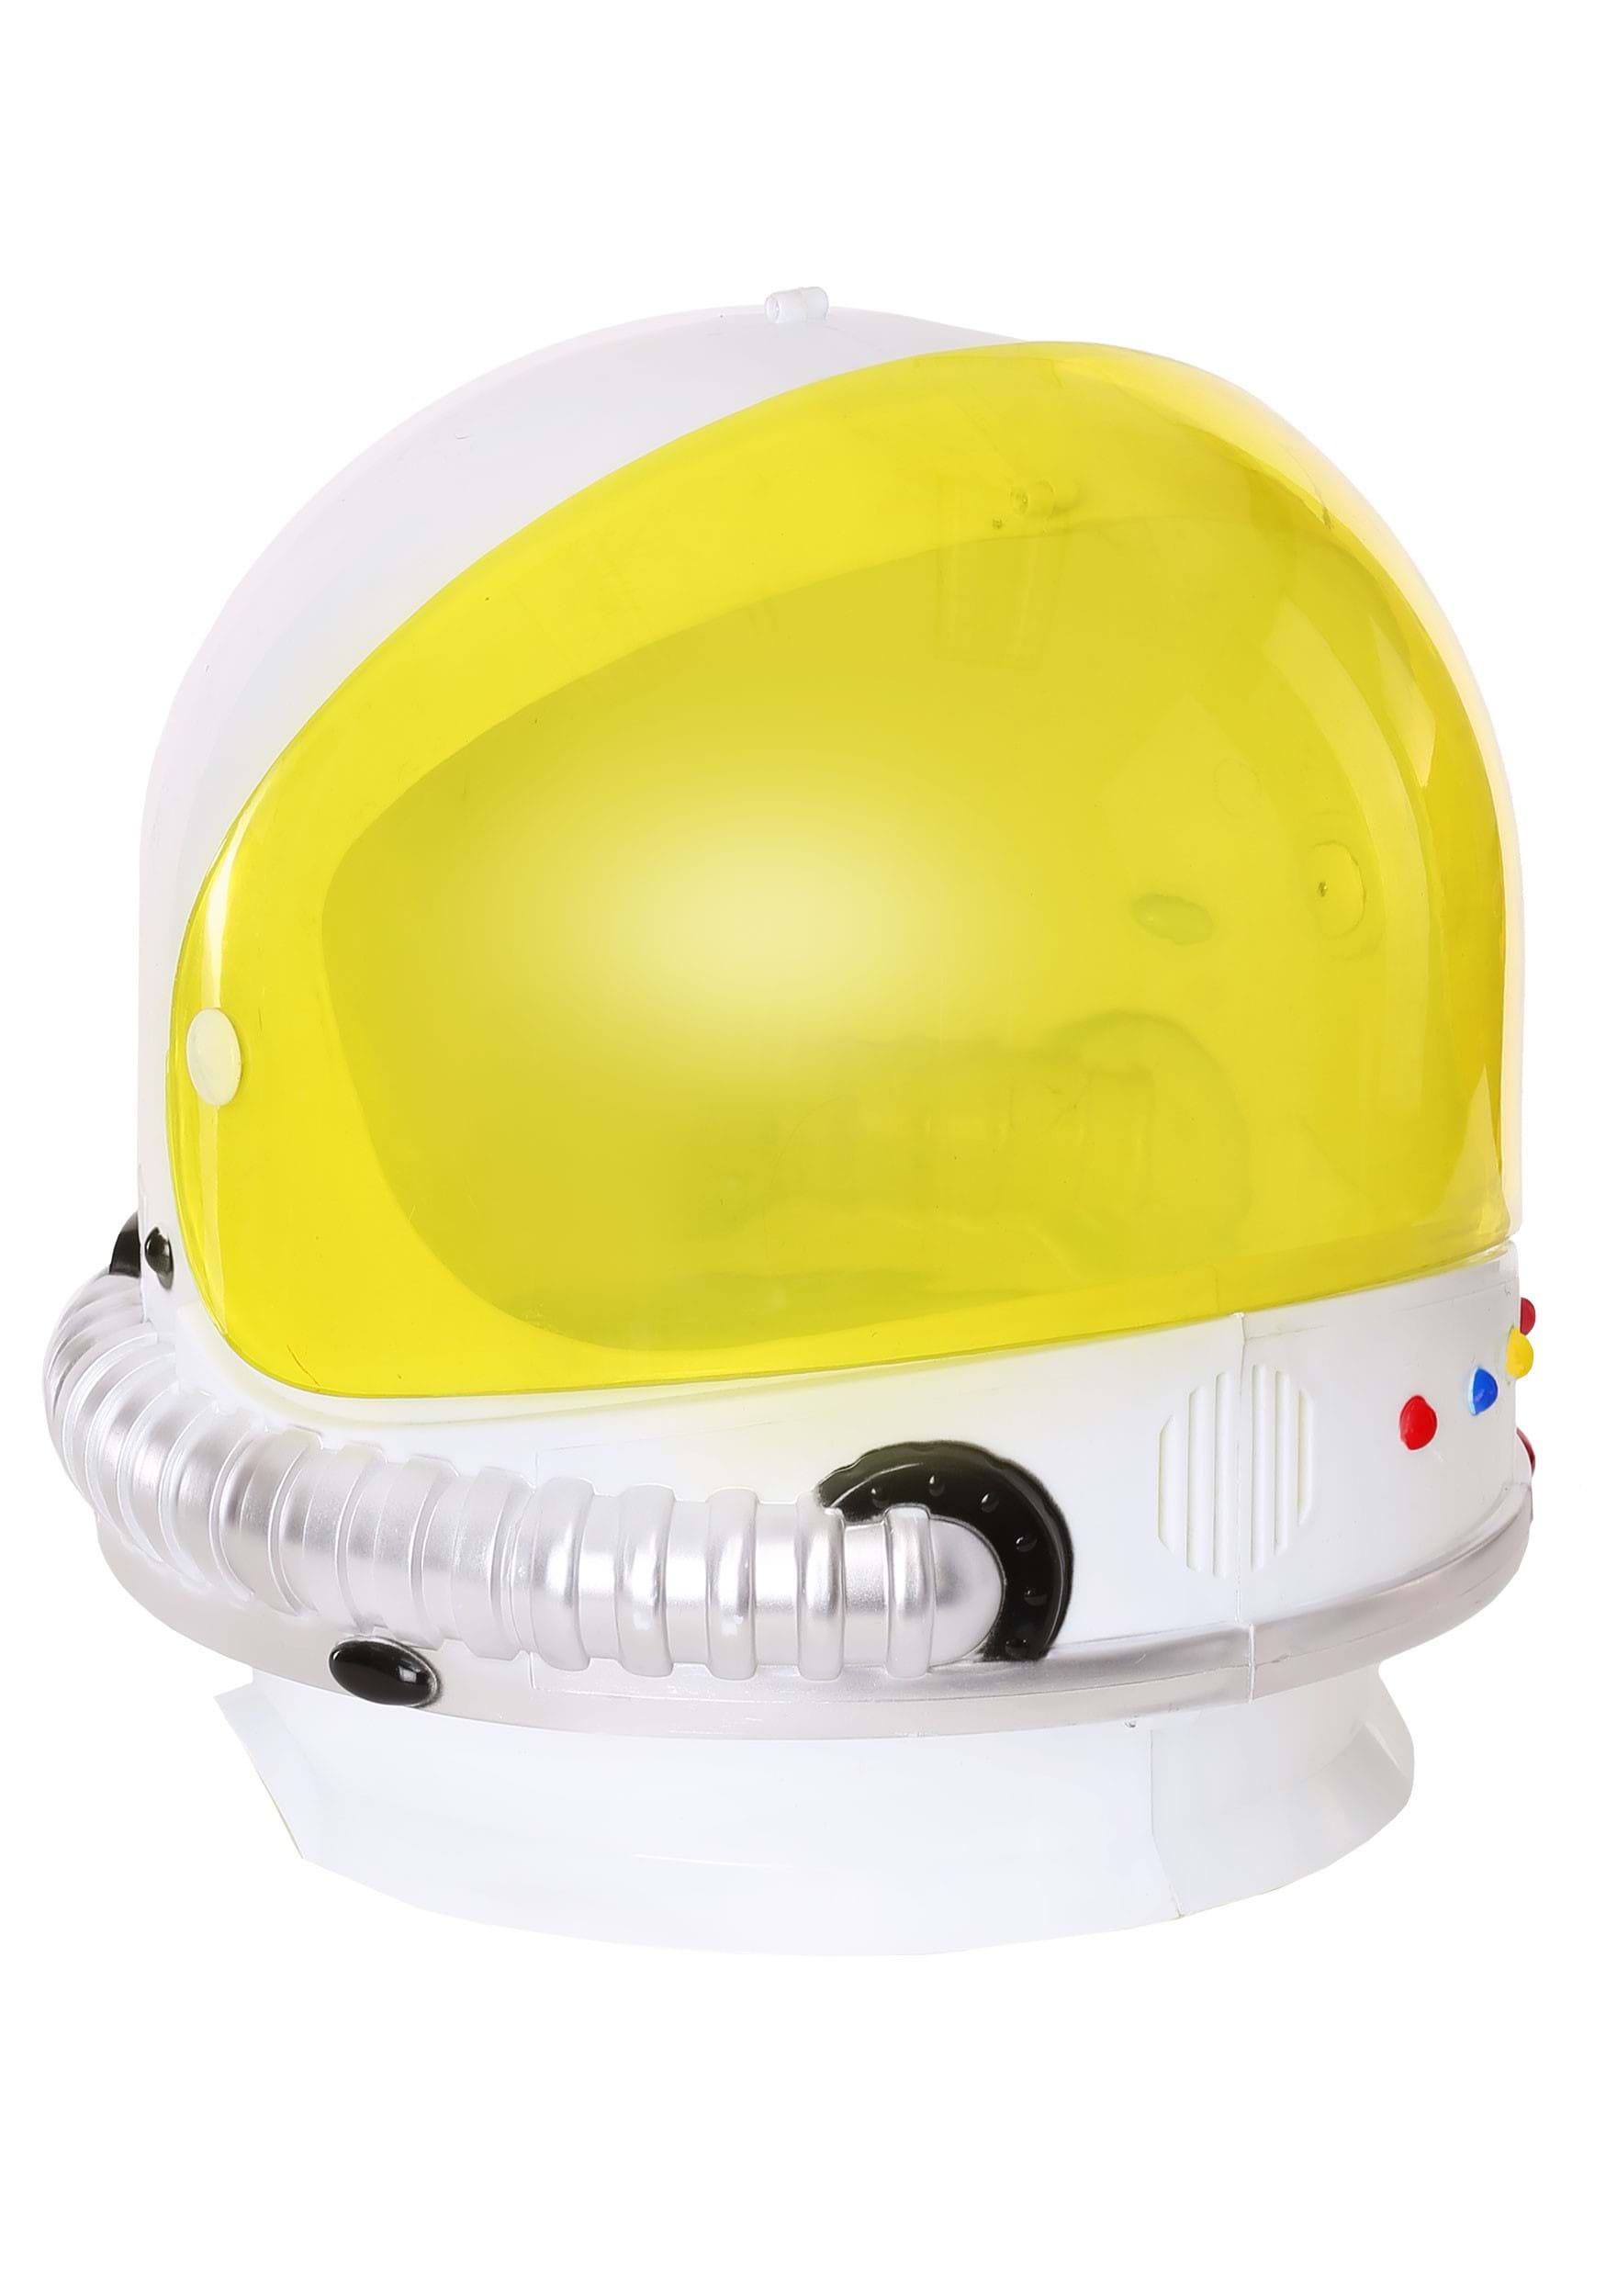 Men's Astronaut Fancy Dress Costume Helmet , Astronaut Fancy Dress Costume Helmets